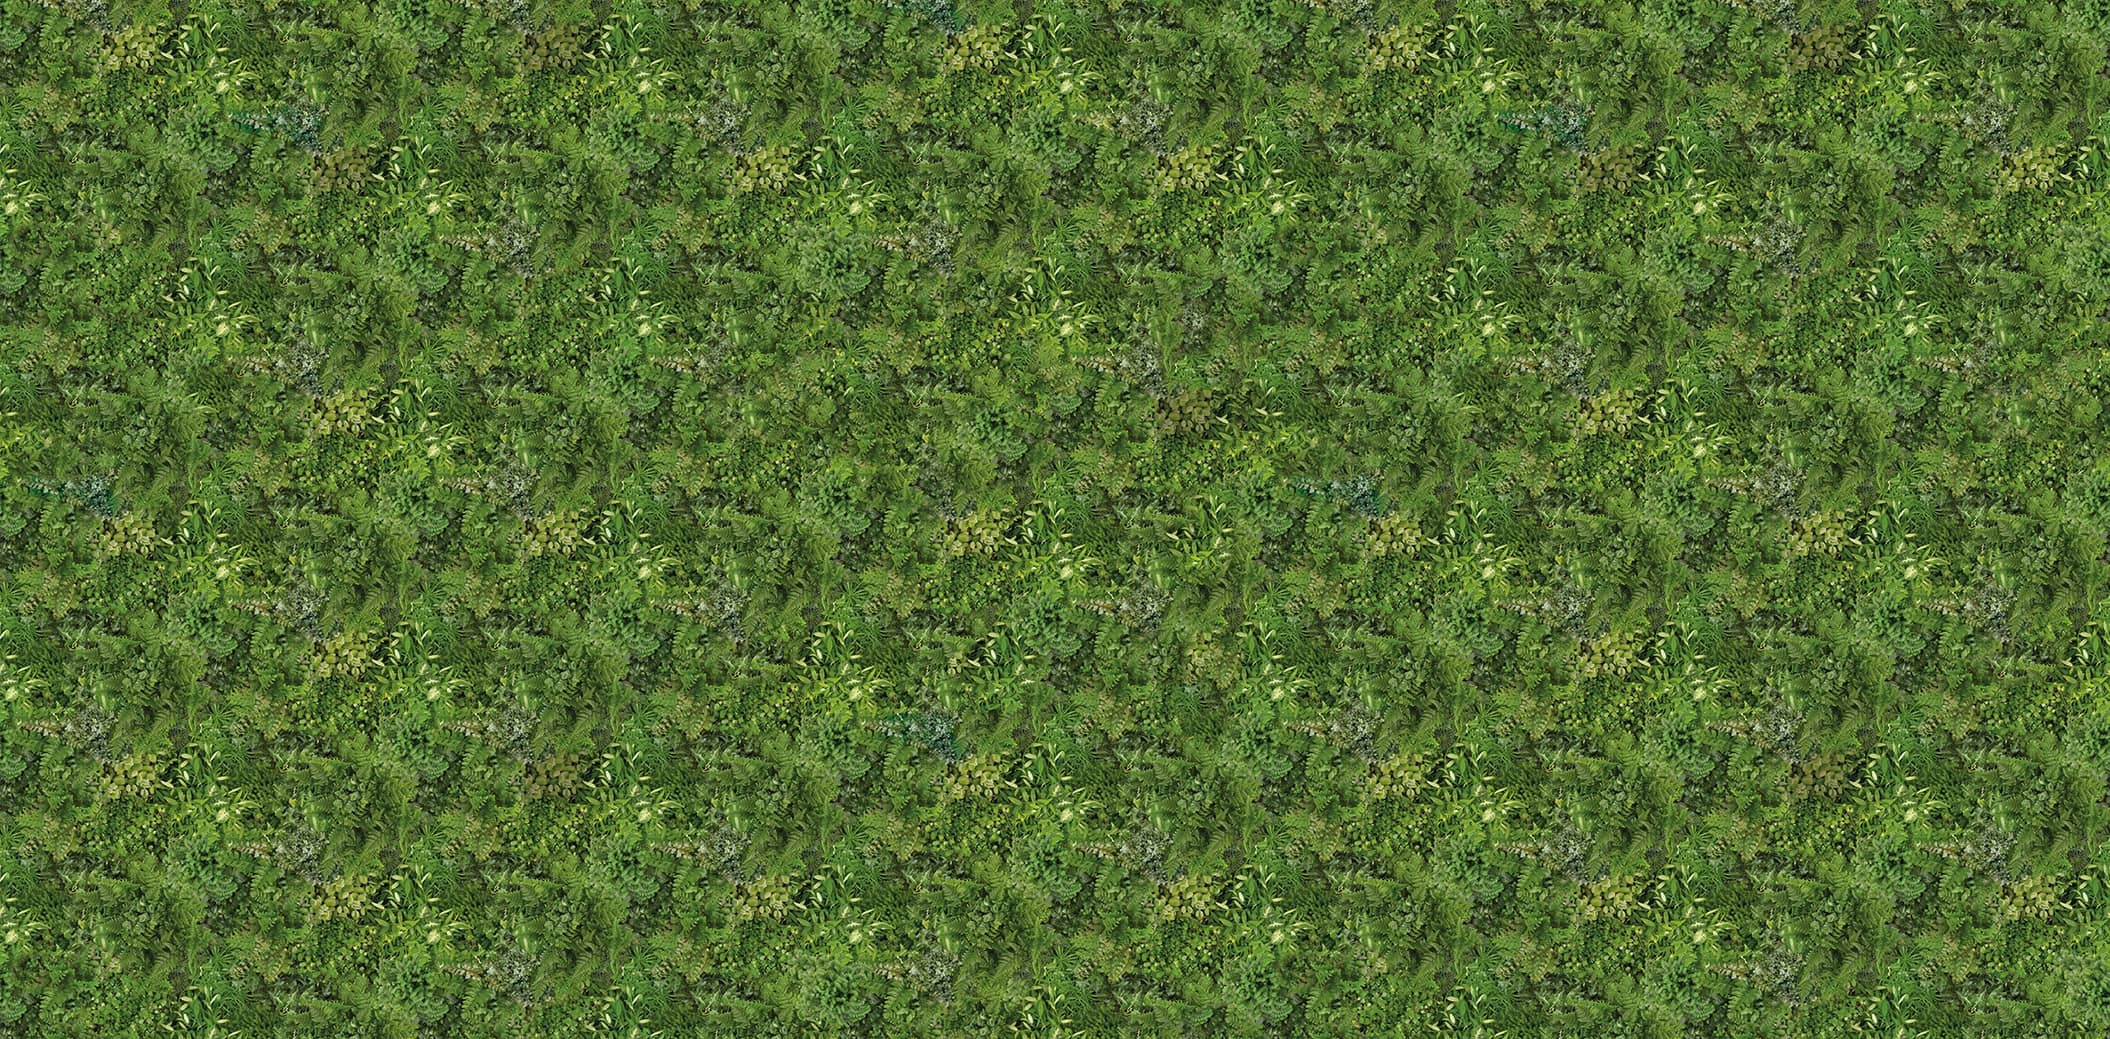 Papier peint panoramique - Mur végétal - Plantes, pots et bouquins -  Version 2- 255cm x 280cm (L x H)